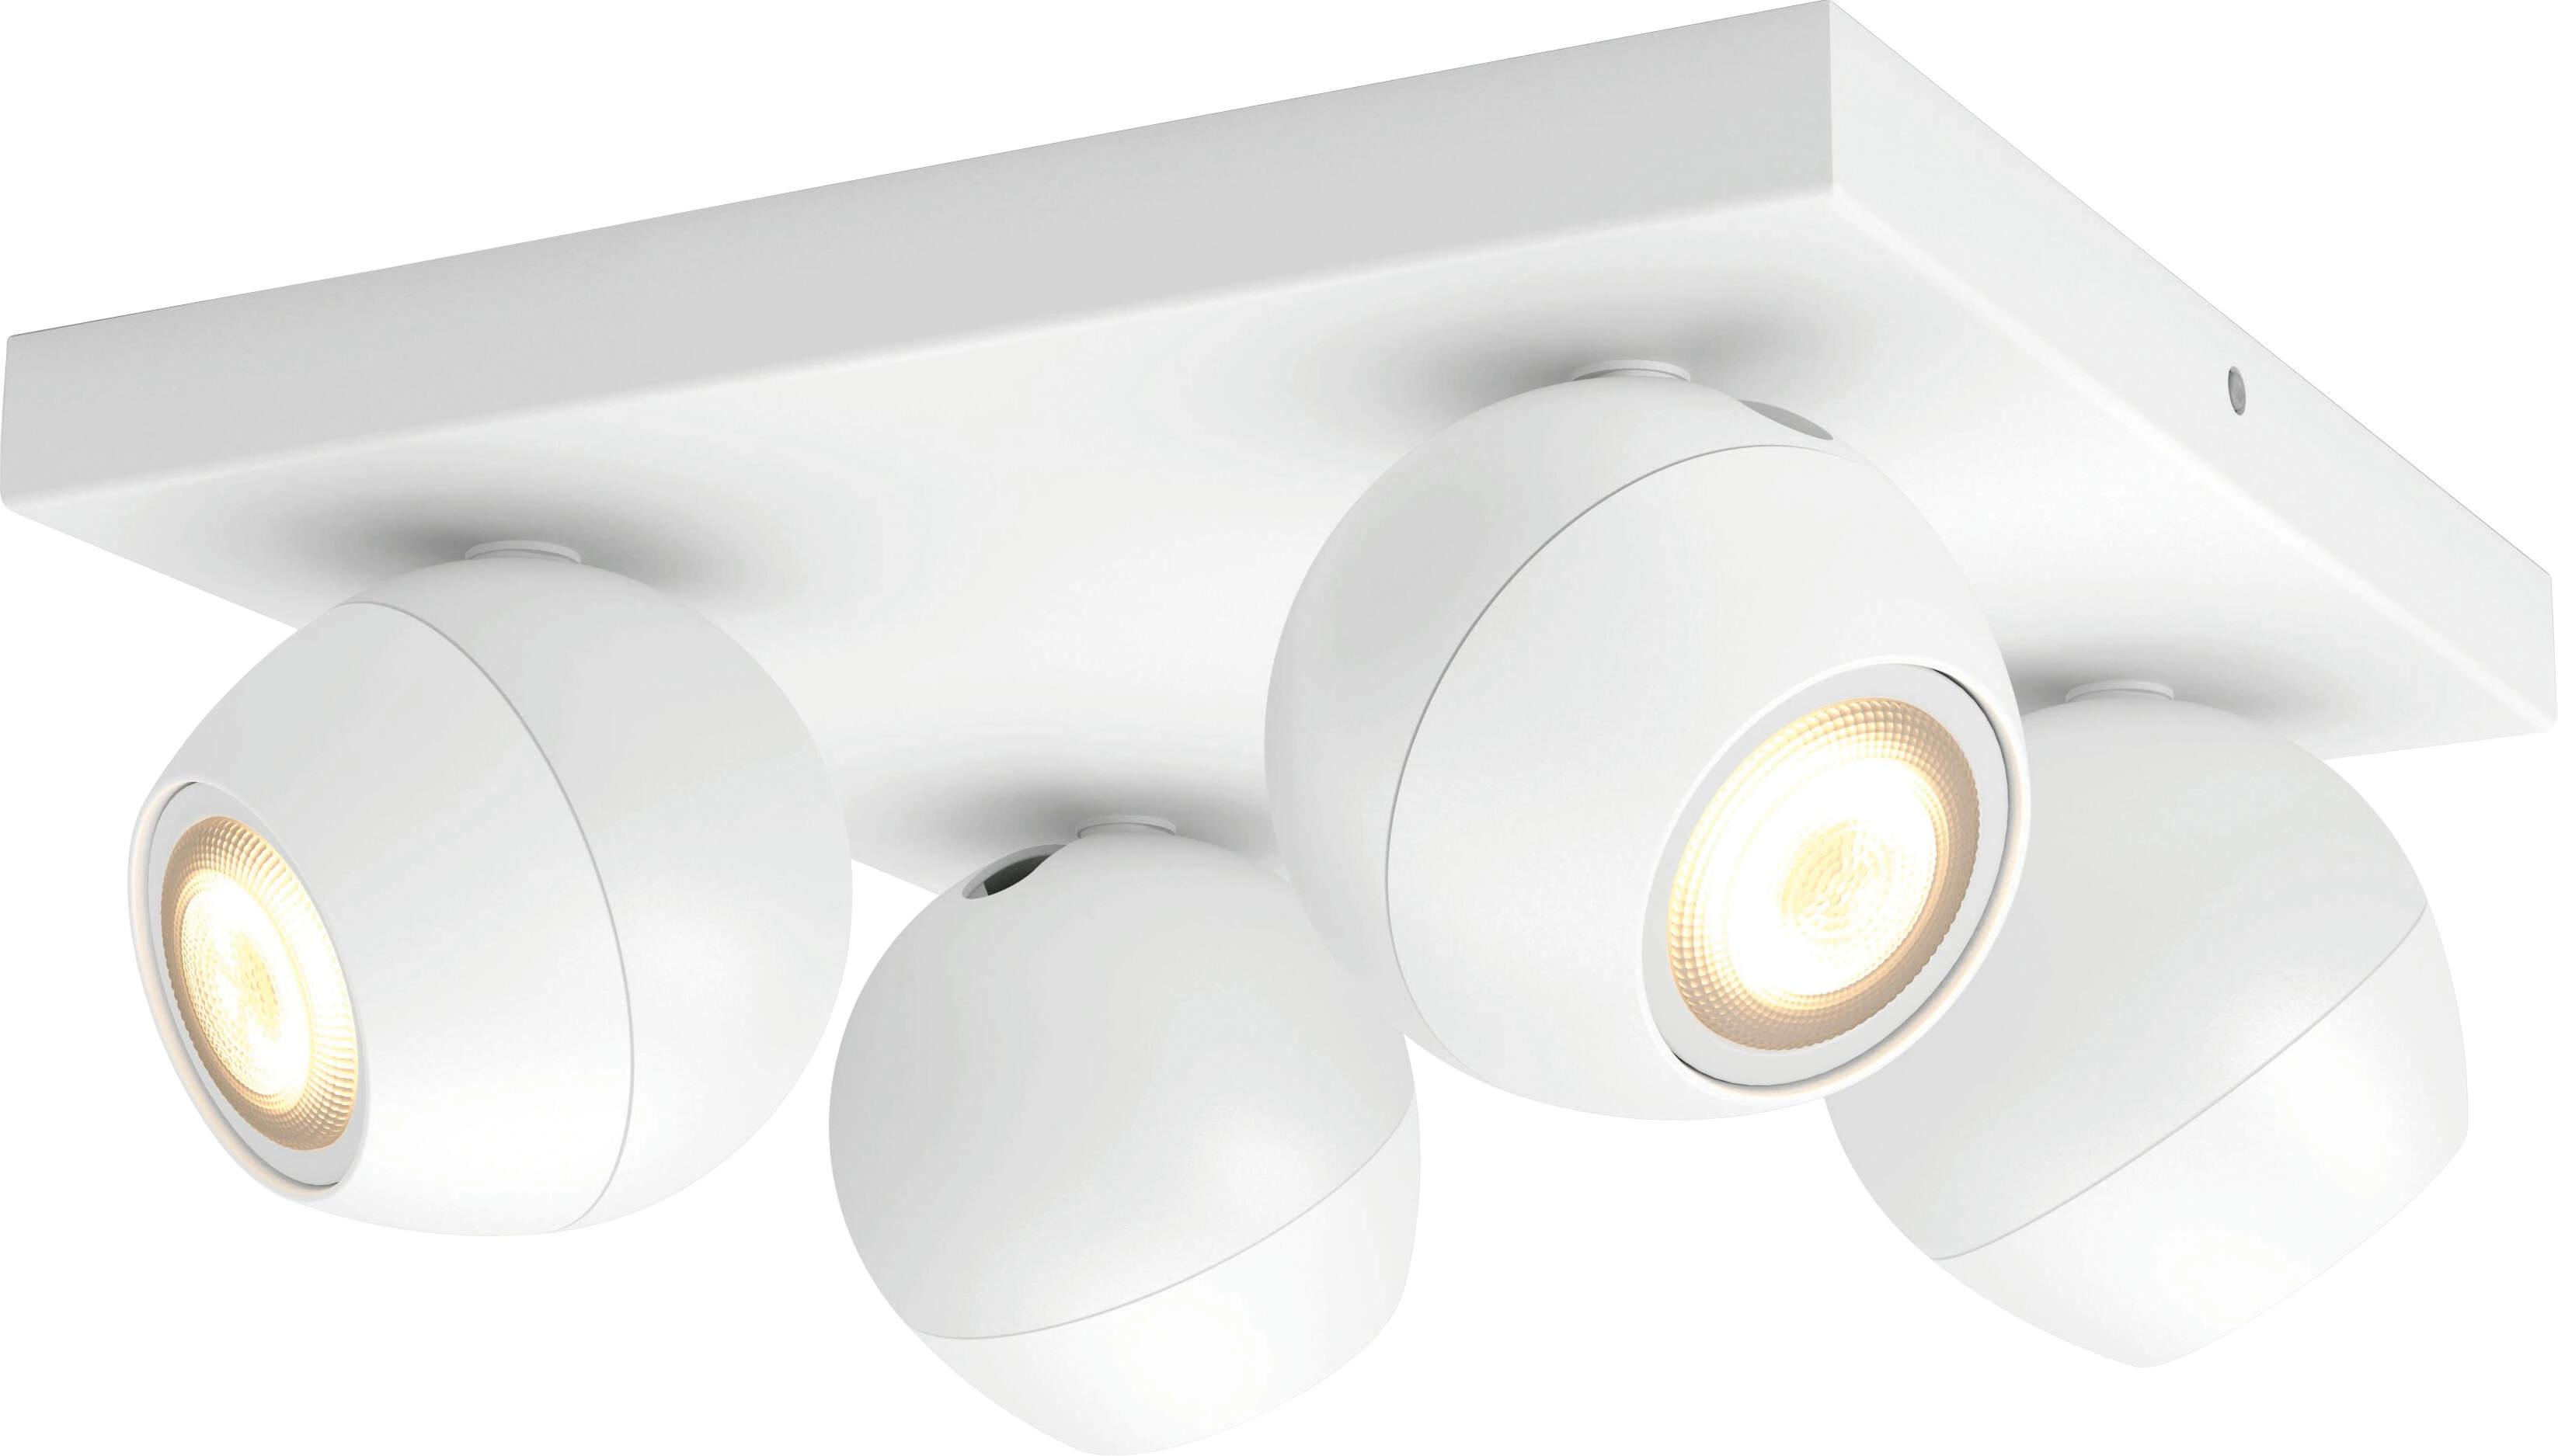 Philips Hue Spot 4-flg. White Ambiance Buckram Weiß 4 x 250 lm inkl. Dimmer  kaufen bei OBI